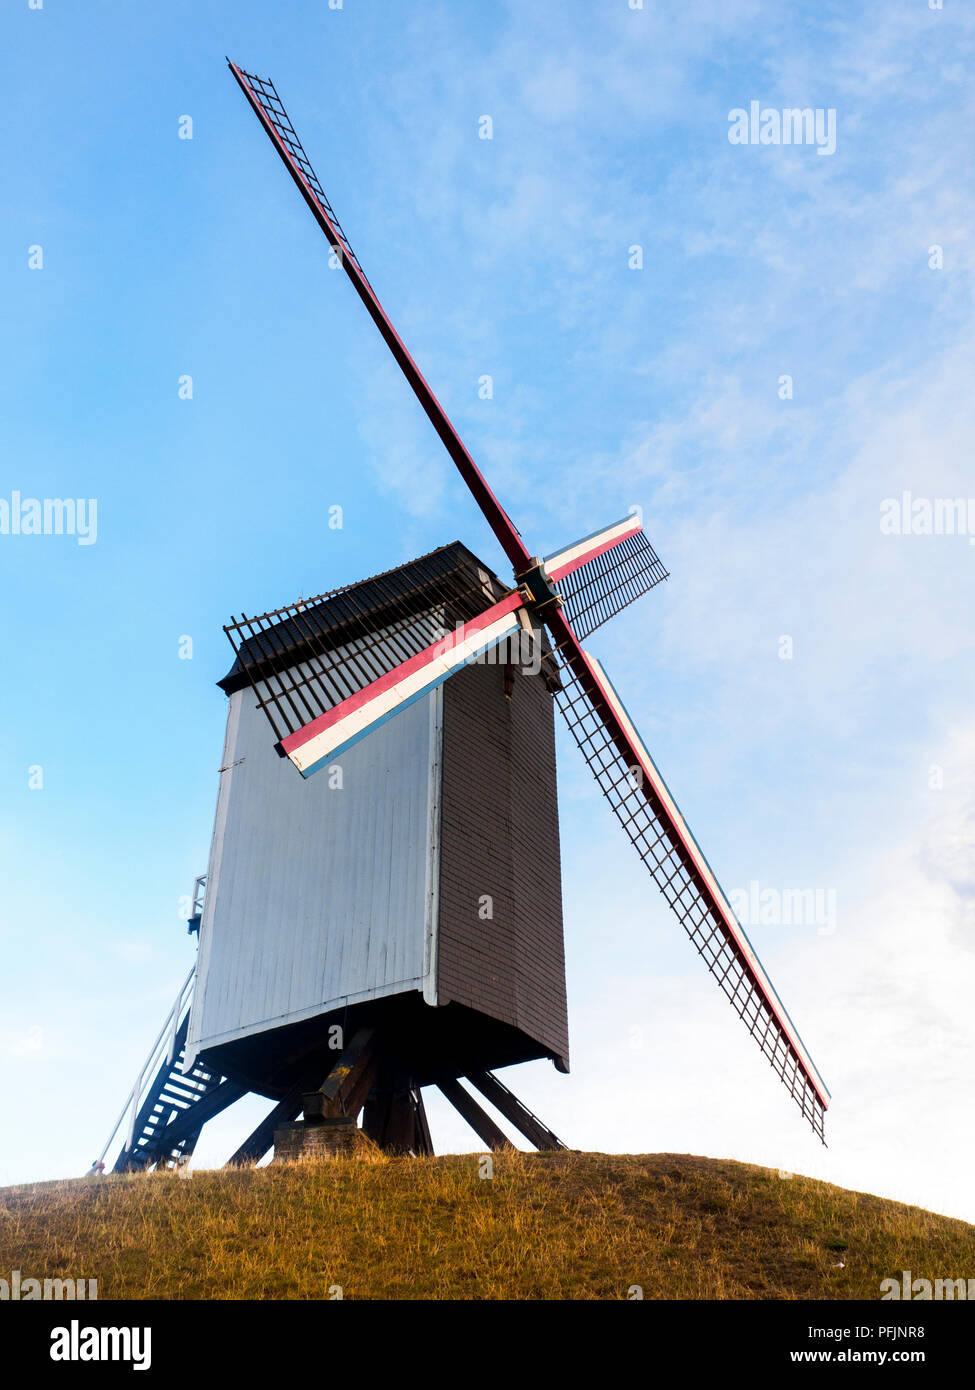 Sint-Janshuismolen windmill grinding grain in its original location since 1770 - Bruges, Belgium Stock Photo